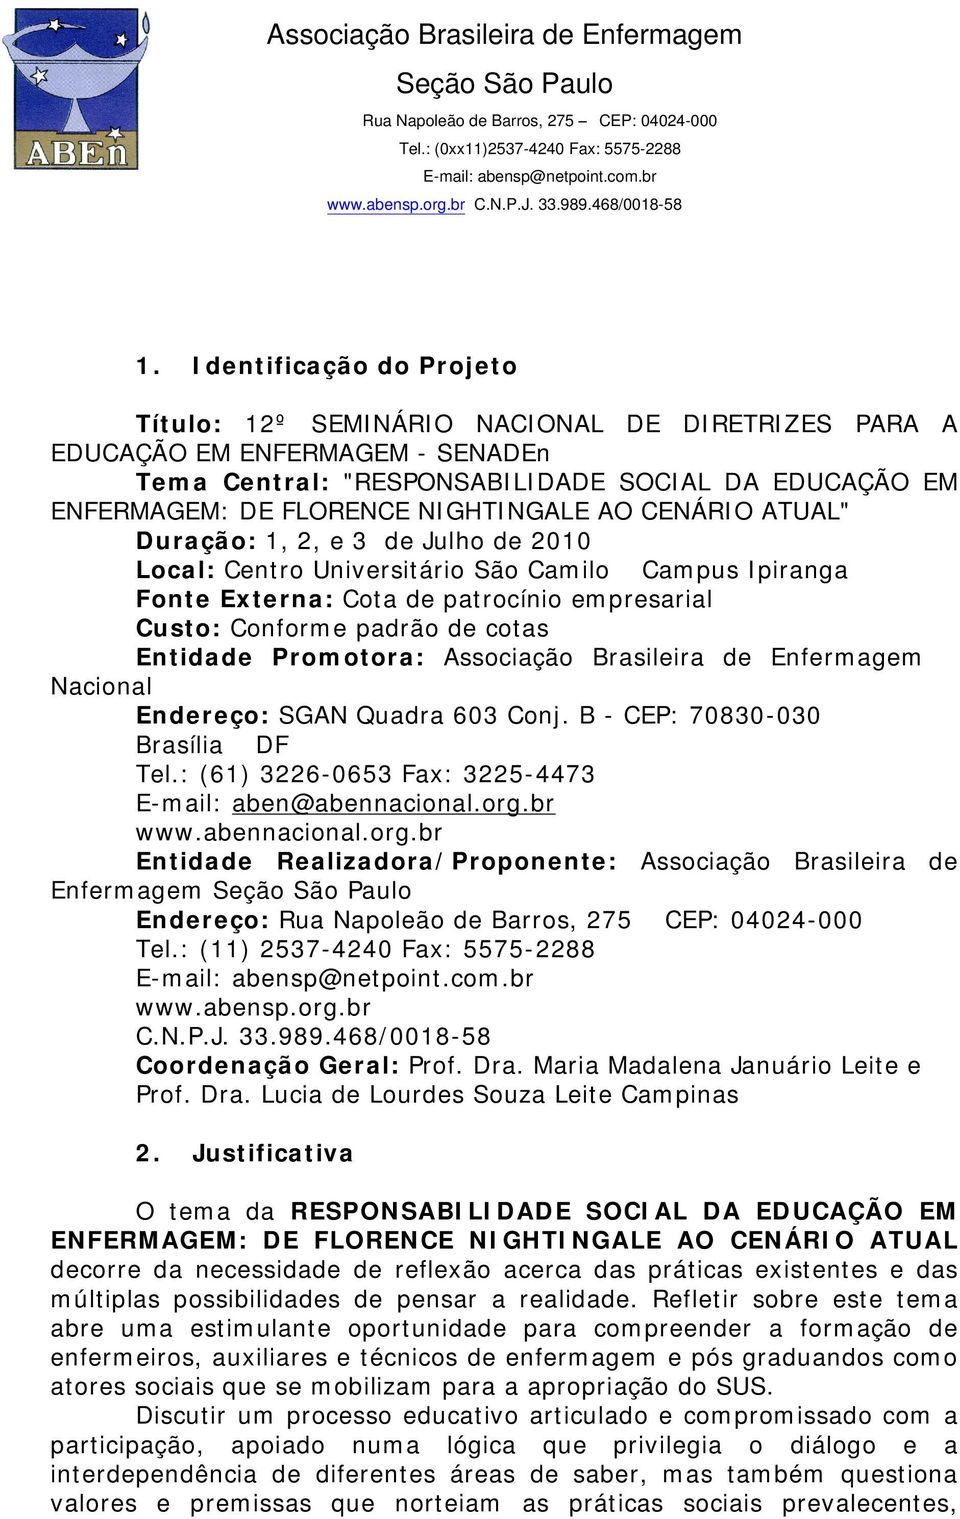 Entidade Promotora: Associação Brasileira de Enfermagem Nacional Endereço: SGAN Quadra 603 Conj. B - CEP: 70830-030 Brasília DF Tel.: (61) 3226-0653 Fax: 3225-4473 E-mail: aben@abennacional.org.